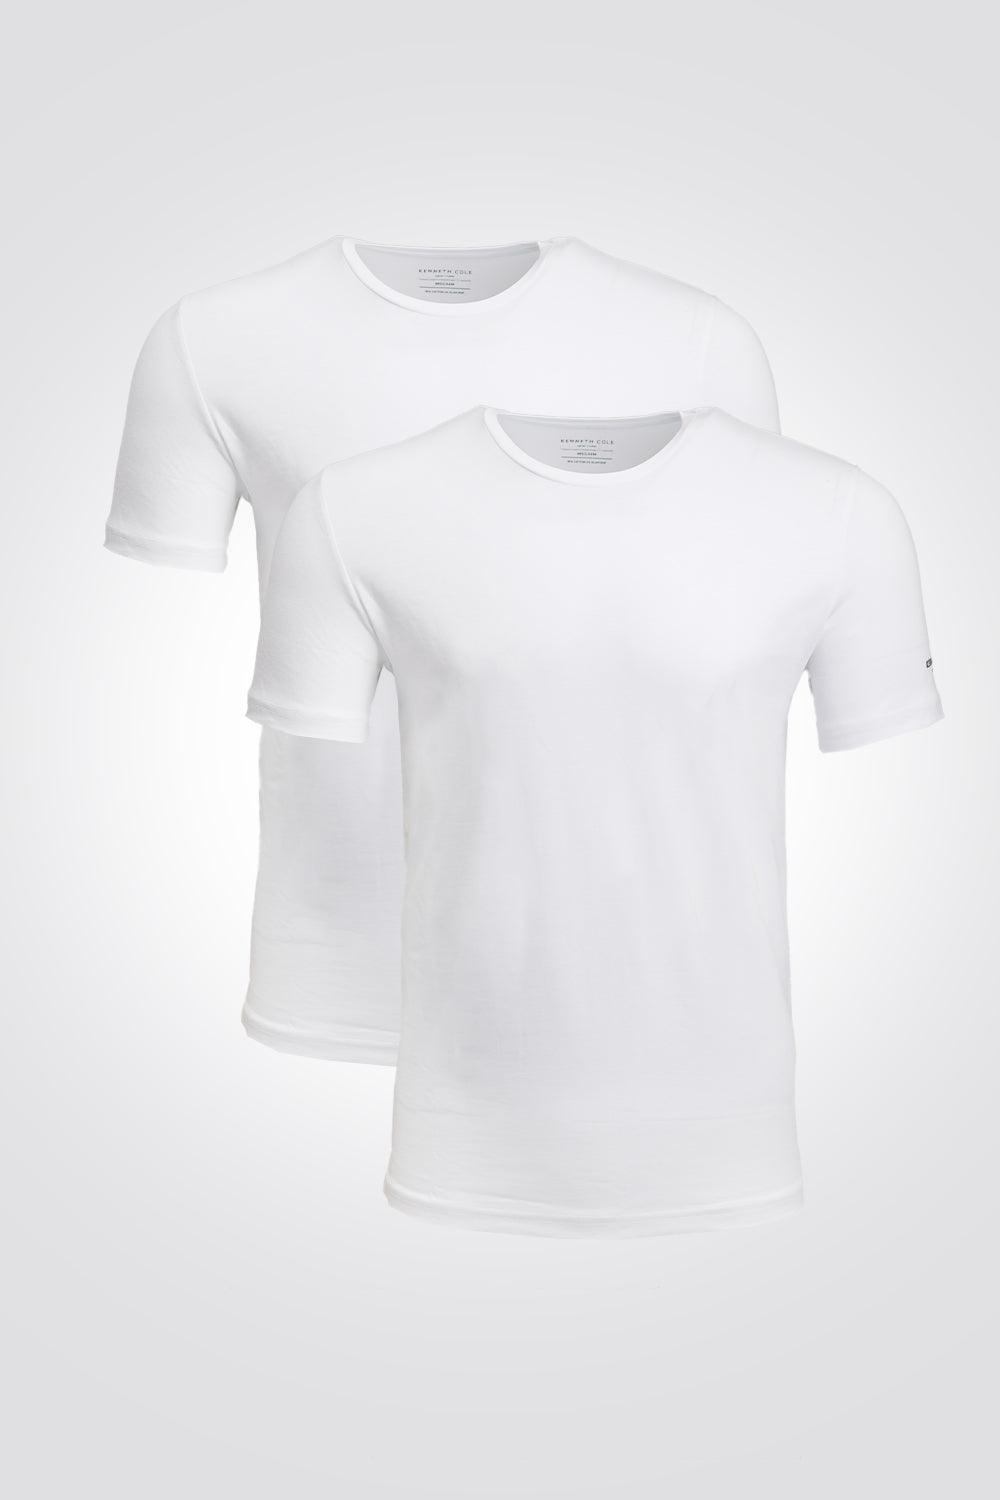 KENNETH COLE - מארז 2 חולצות צווארון עגול בצבע לבן - MASHBIR//365